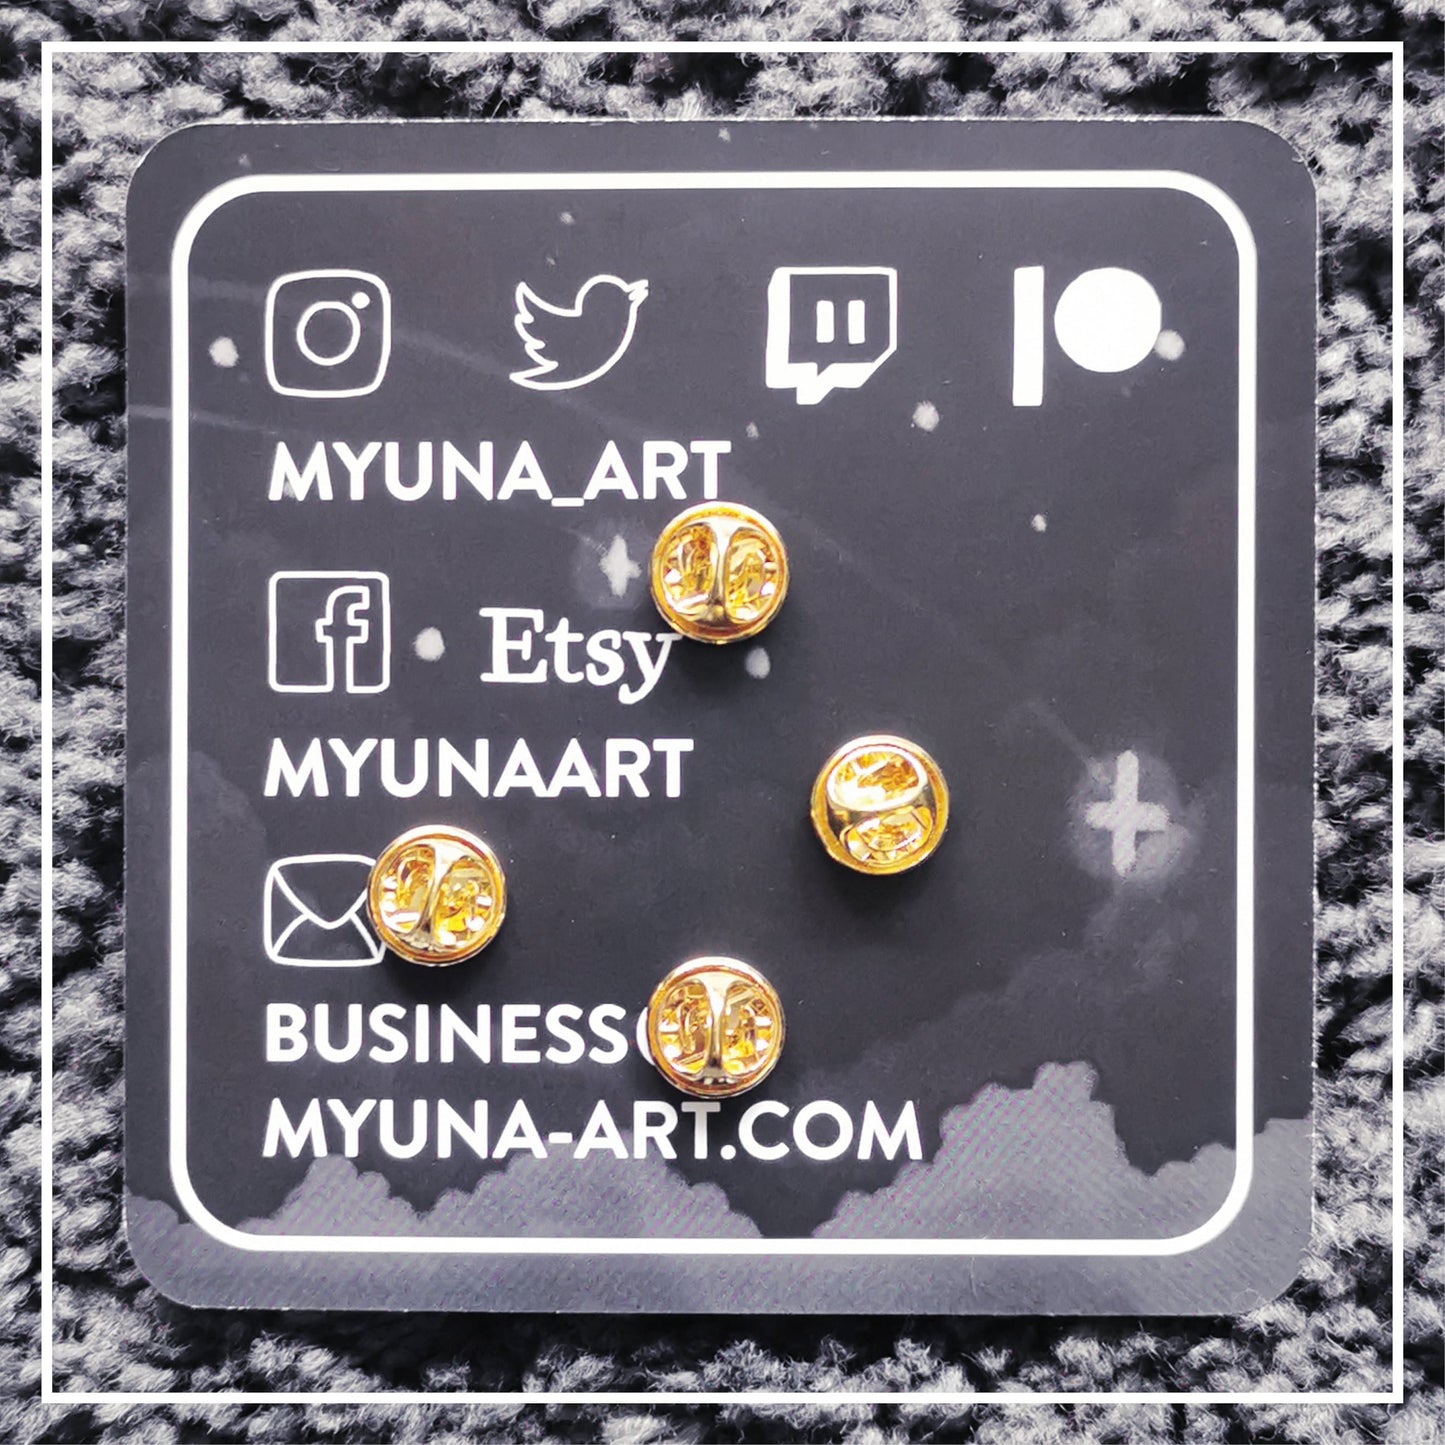 Myuna's XXL Mega Rayquaza Pin – Big Fanart Sky Dragon Legendary Hard Enamel Pin with 4 pinback posts